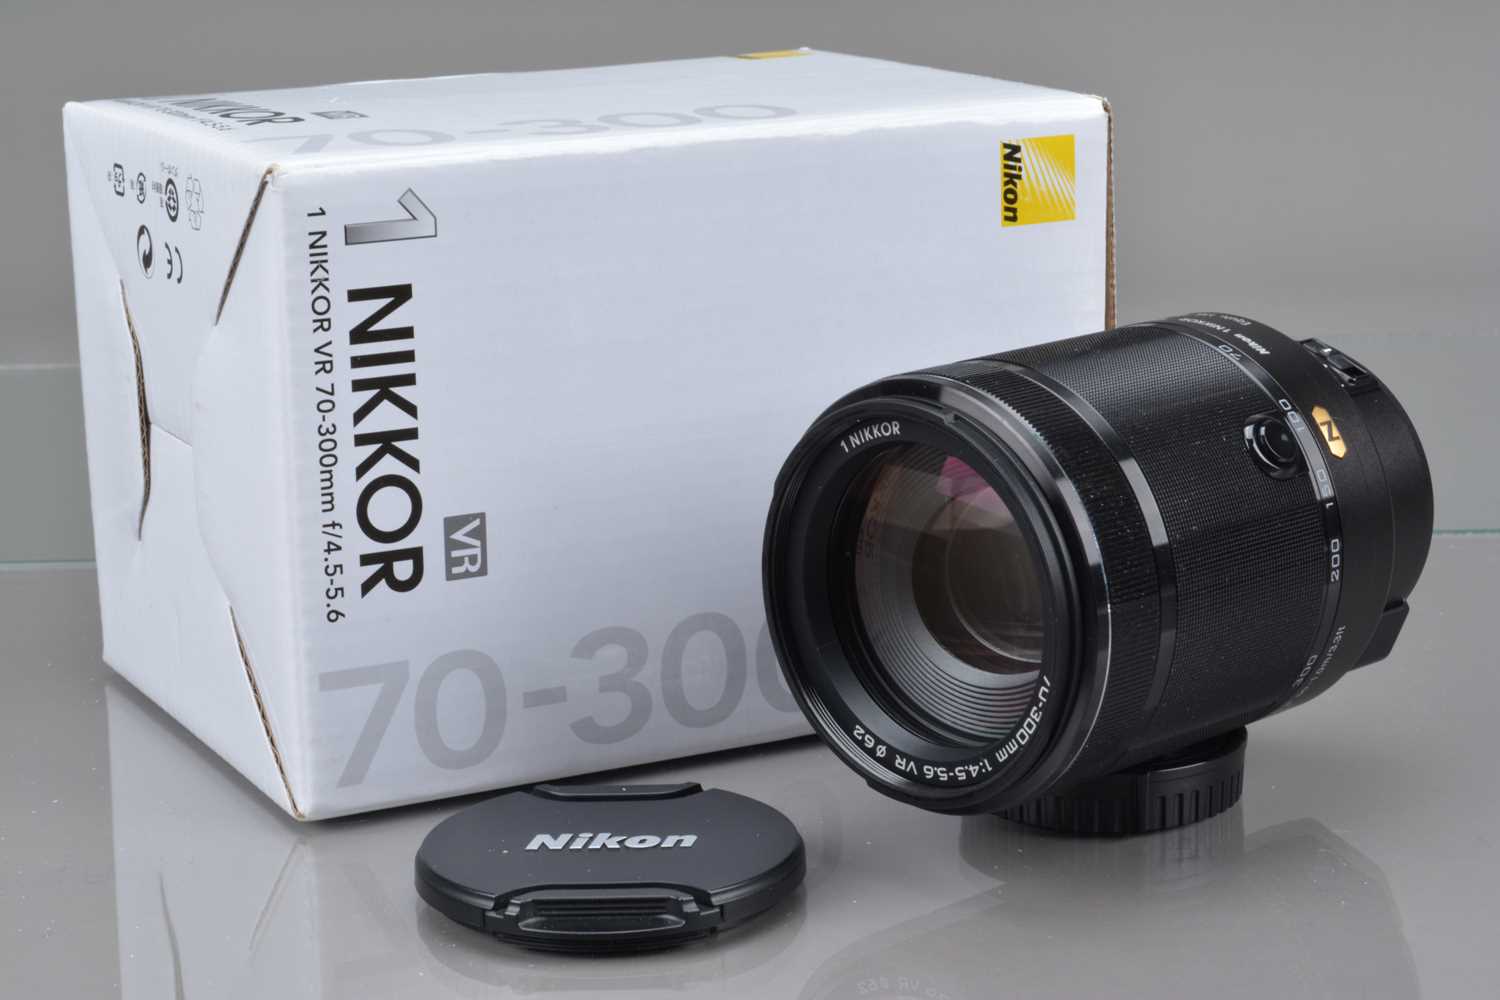 A Nikon 1 Nikkor VR 70-300mm f/4.5-5.6 Lens,